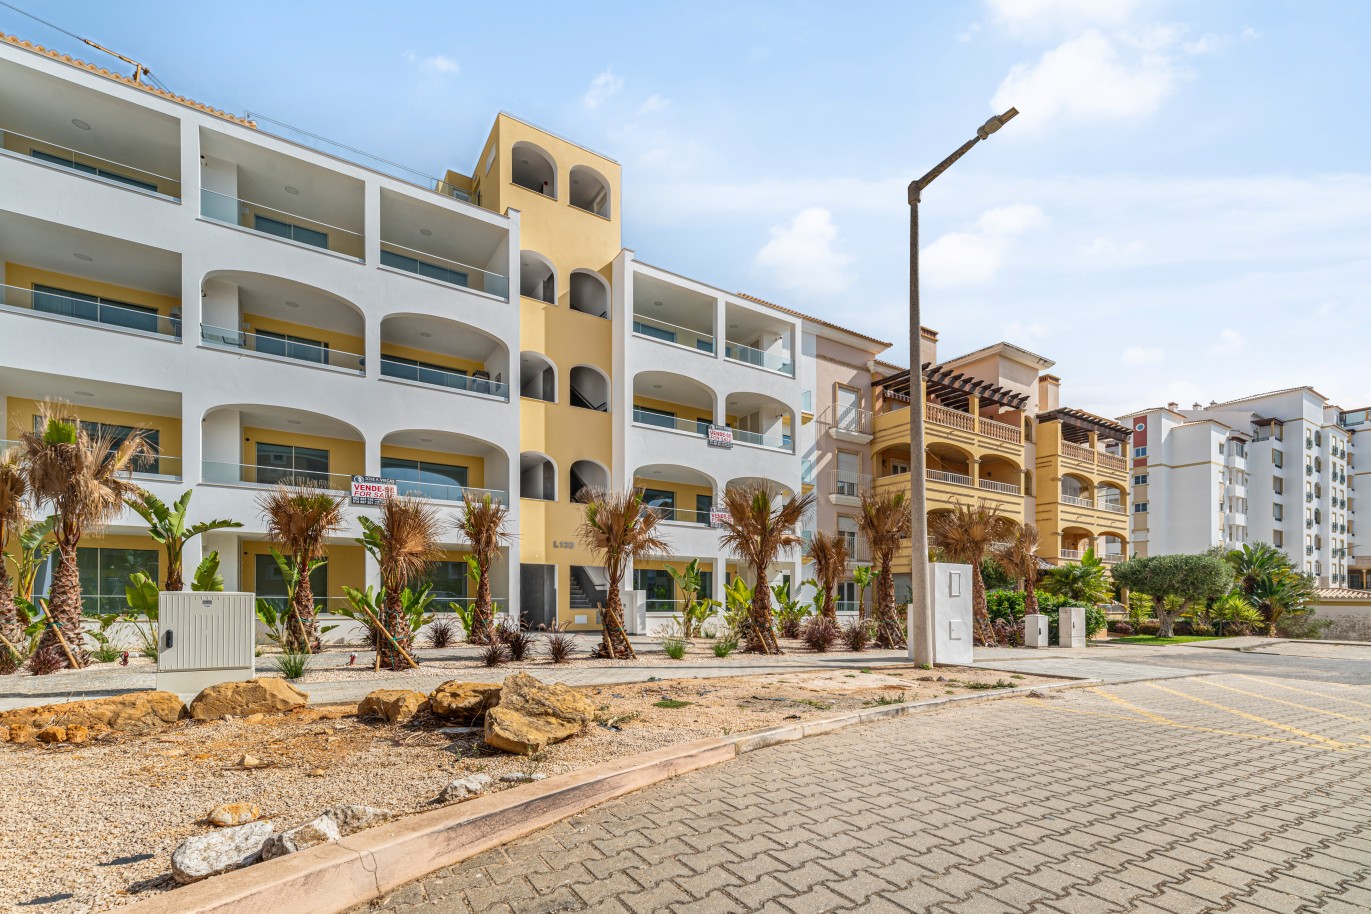 Verkauf einer Wohnung im Bau, mit Terrasse, Lagos, Algarve, Portugal_238005